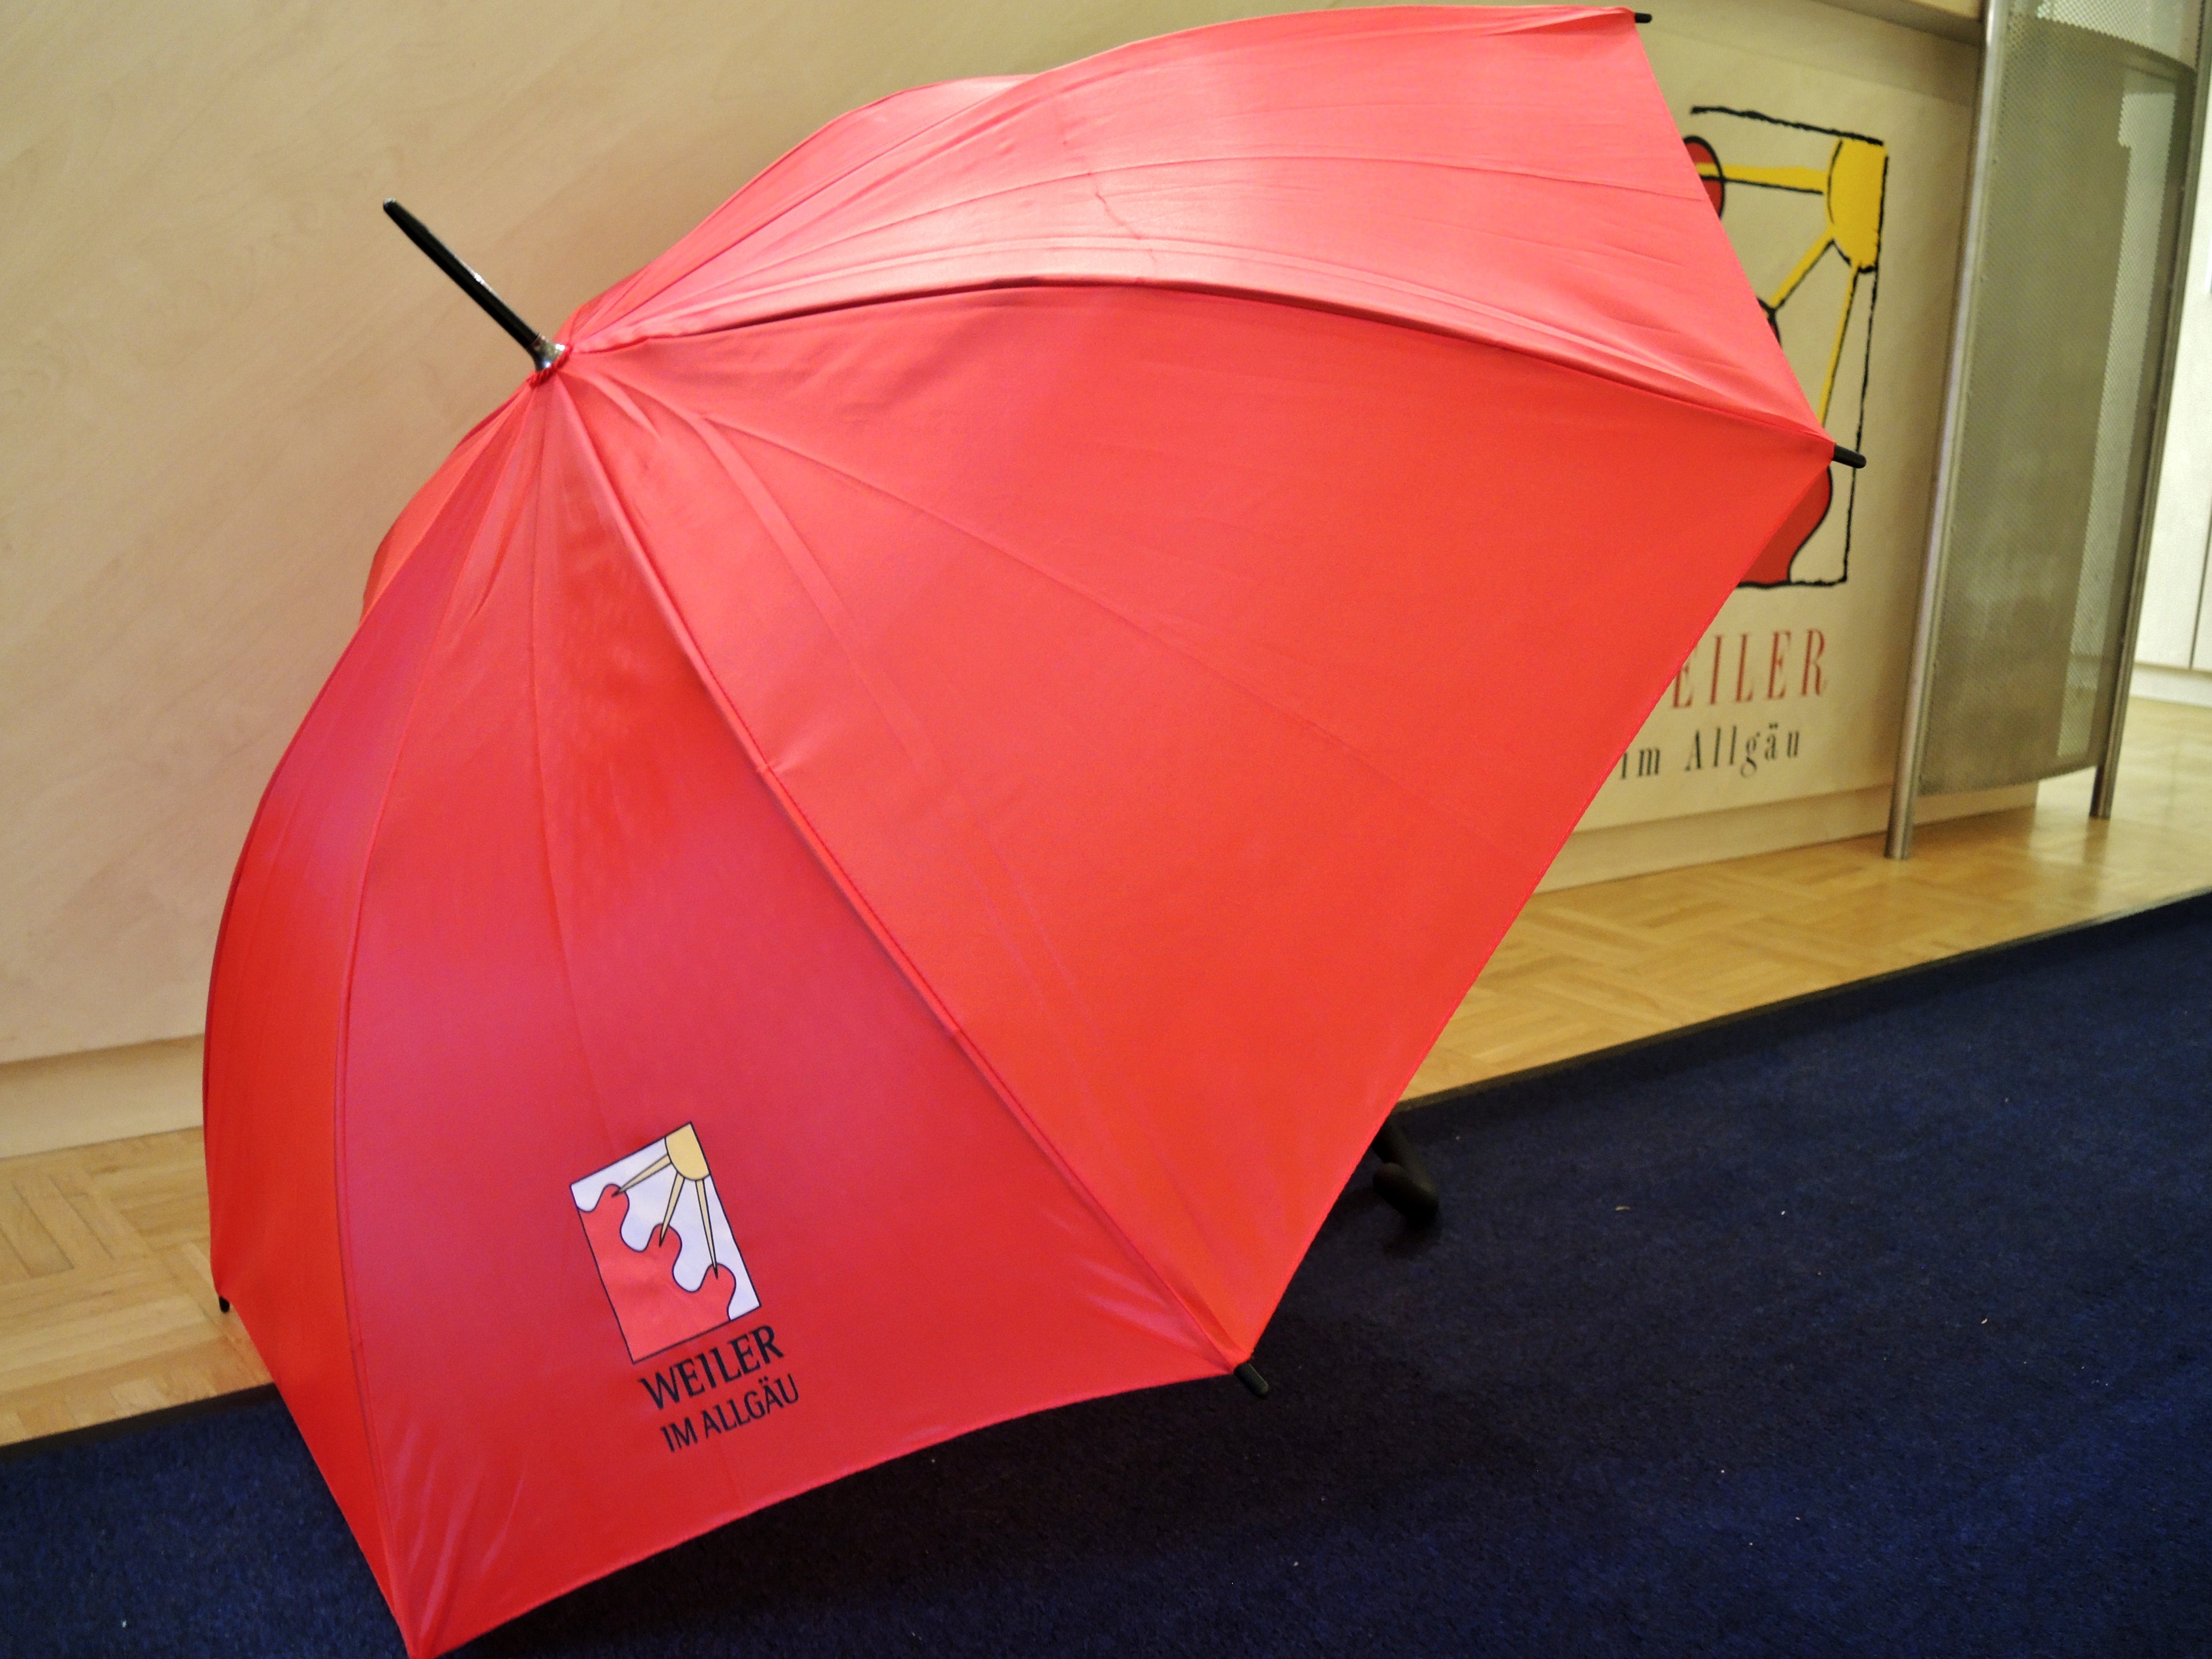  roter Regenschirm mit Weiler-Logo - das Bild wird mit Klick vergrößert 